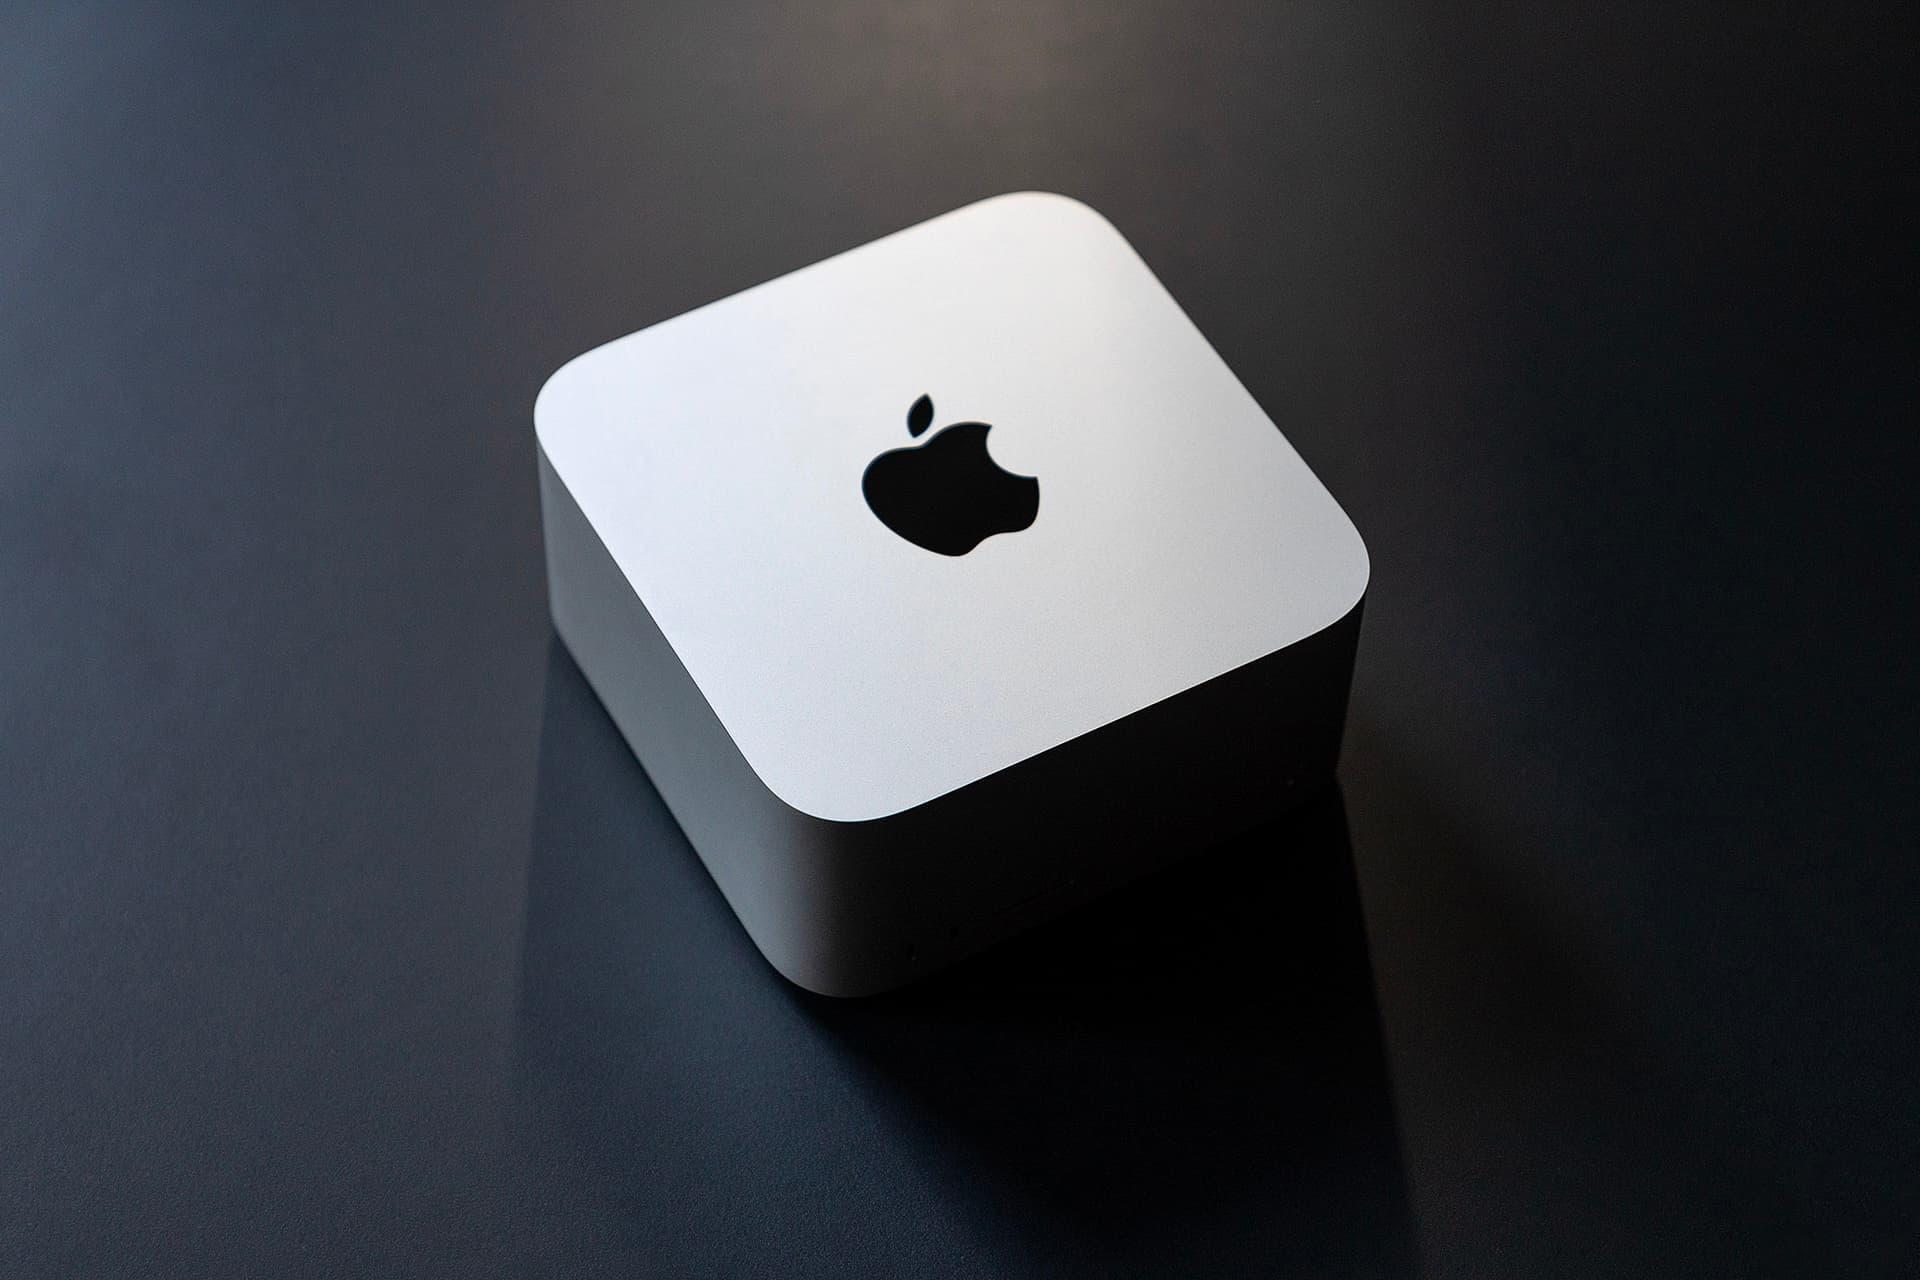 مرجع متخصصين ايران مك استوديو اپل / Apple Mac Studio از نماي بالا